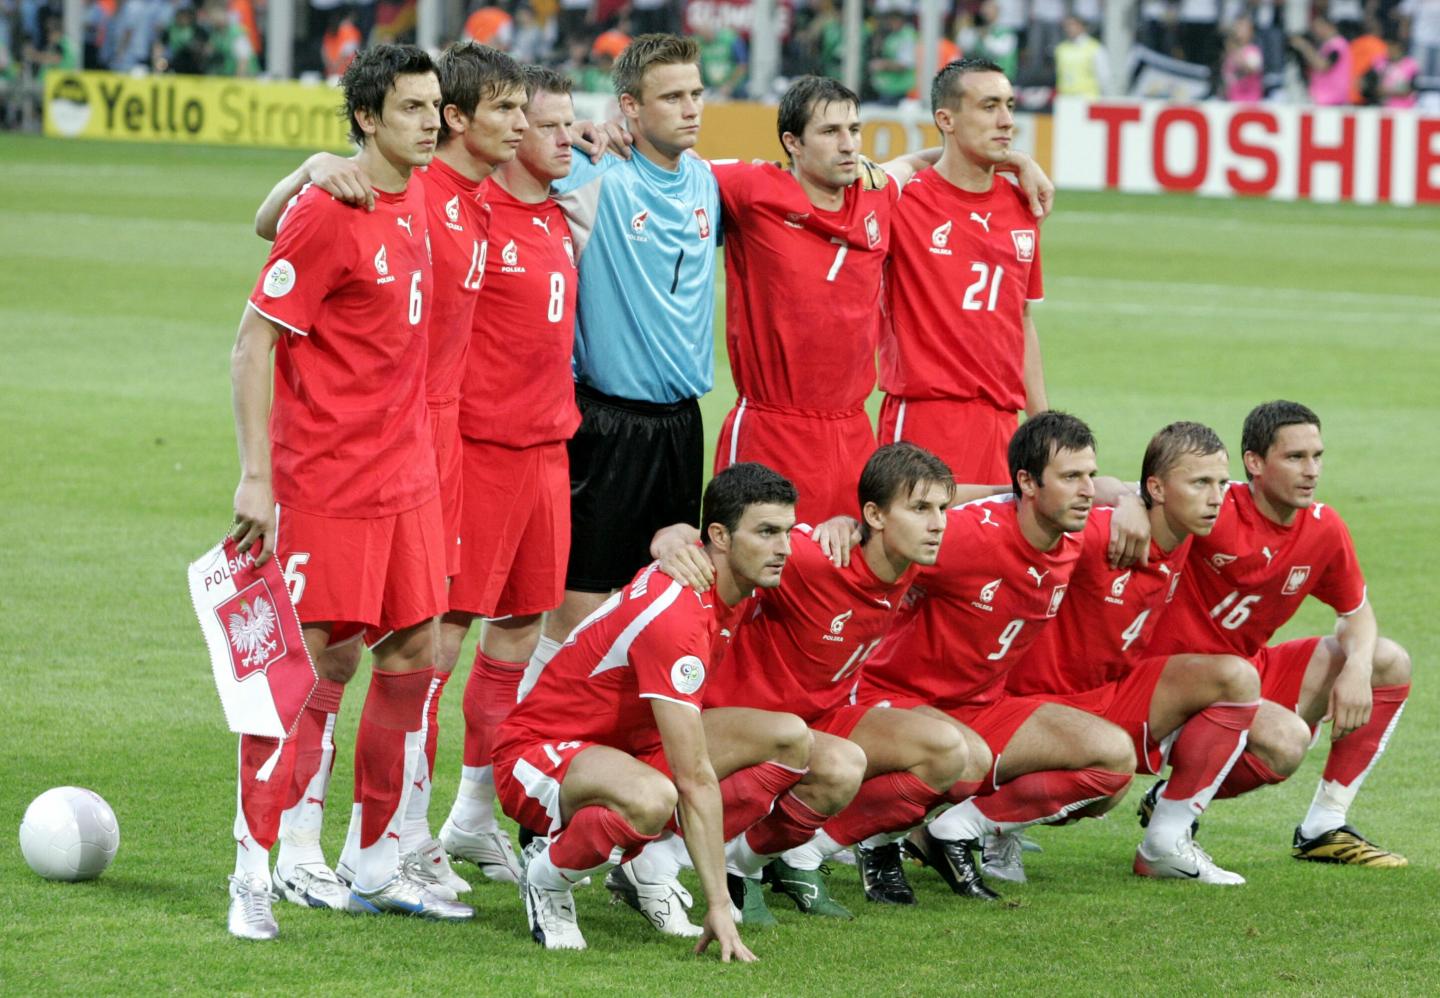 Niemcy - Polska 1:0, 14.06.2006